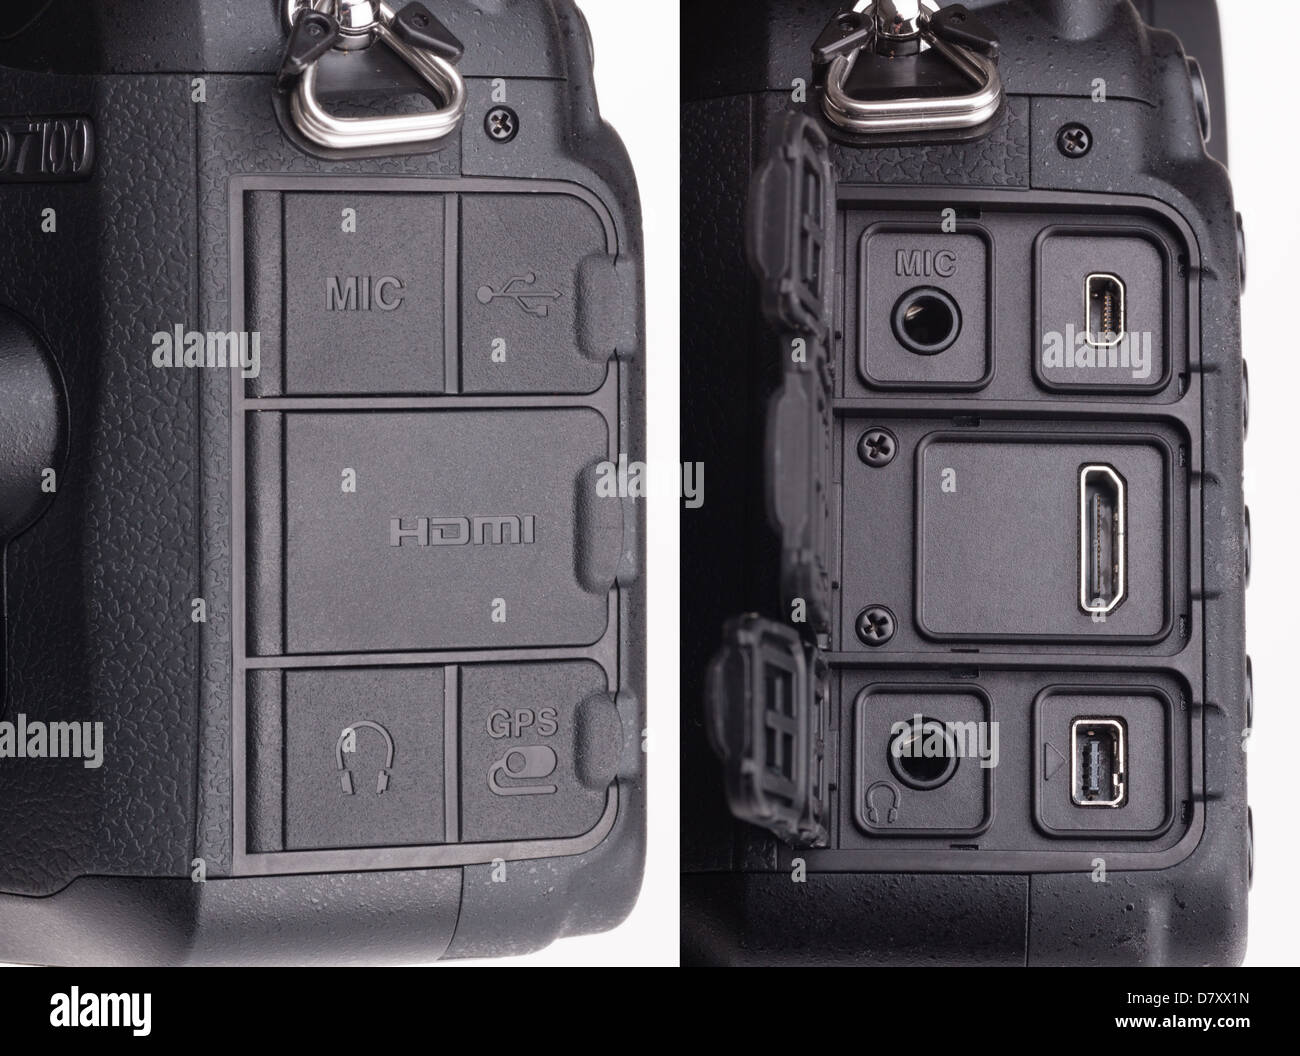 Digitale SLR Nikon D7100 - Schnittstellen oder Anschlüsse für HDMI,  Mikrofon, Kopfhörer, GPS, Fernbedienung, USB mit Kautschuk wasserdichte  Abdeckung Stockfotografie - Alamy